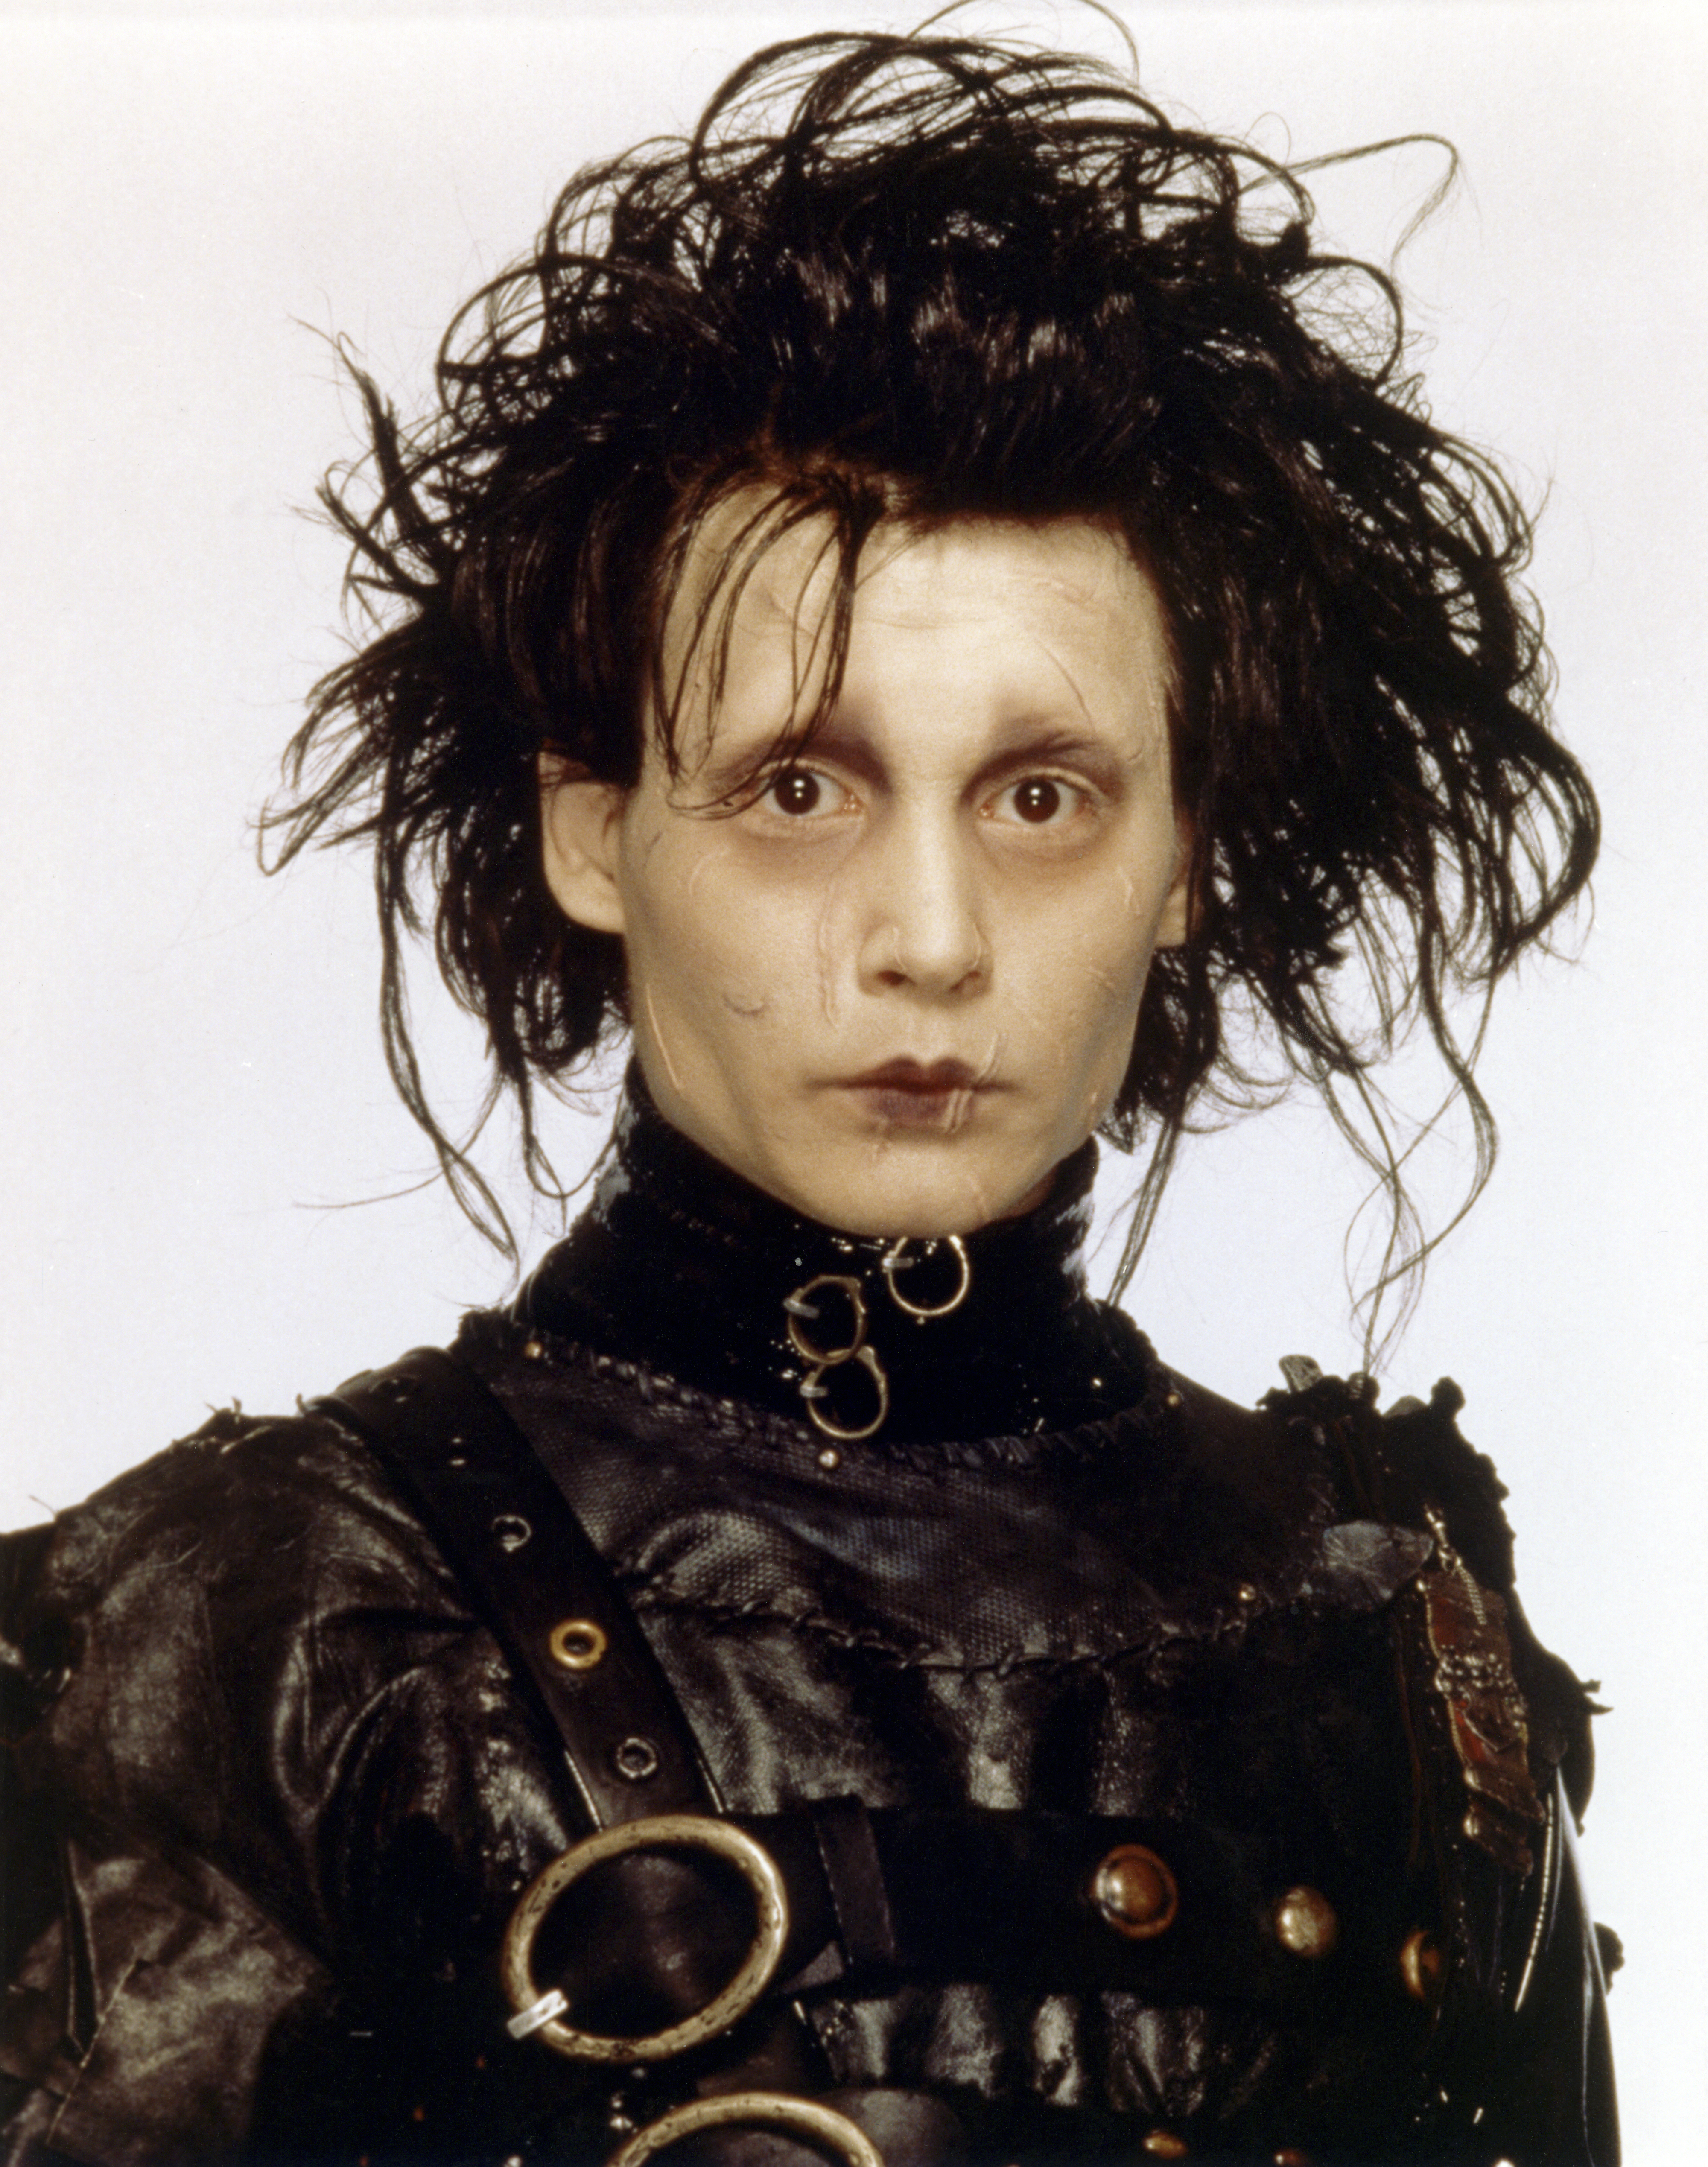 Johnny Depp am Set von "Edward Scissorhands" | Quelle: Getty Images